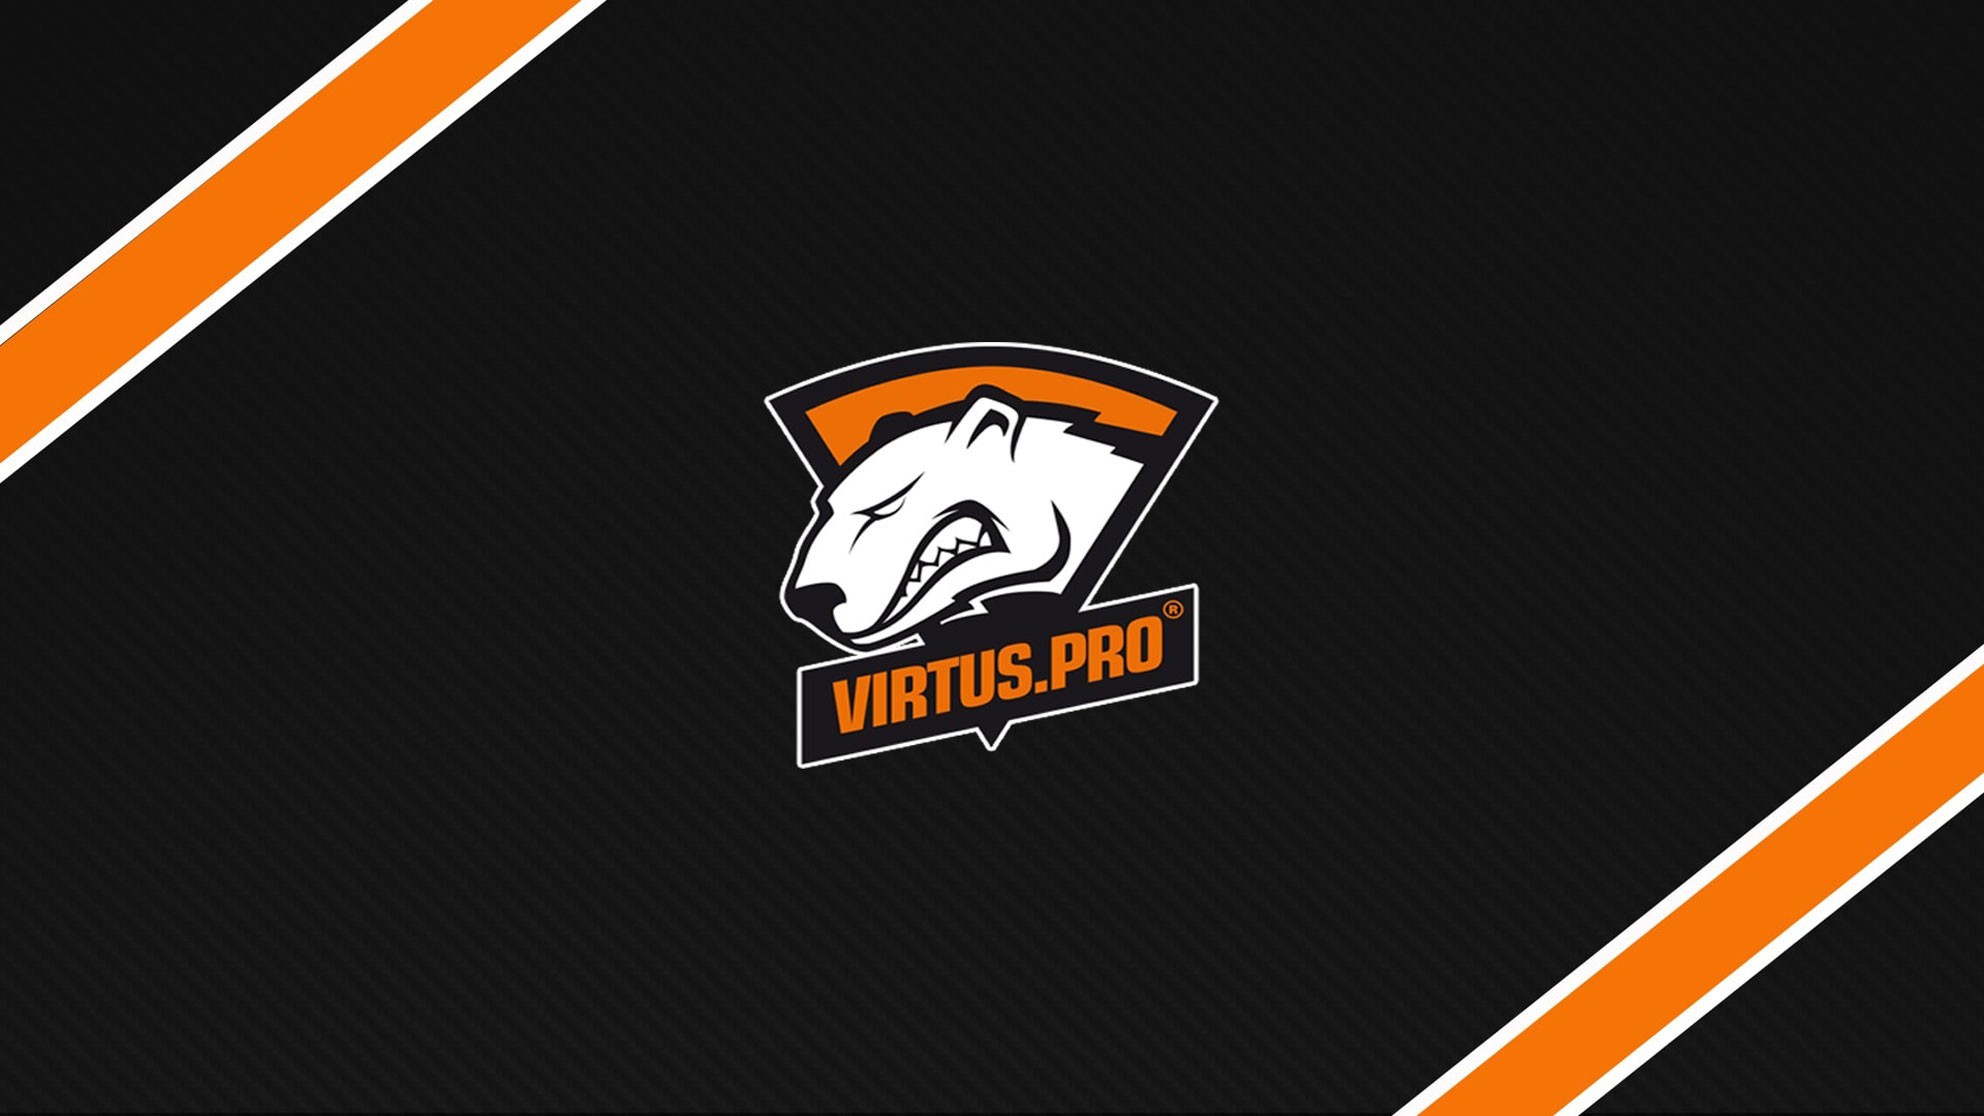 N0rb3r7 и fame стали игроками Virtus.pro по CS:GO